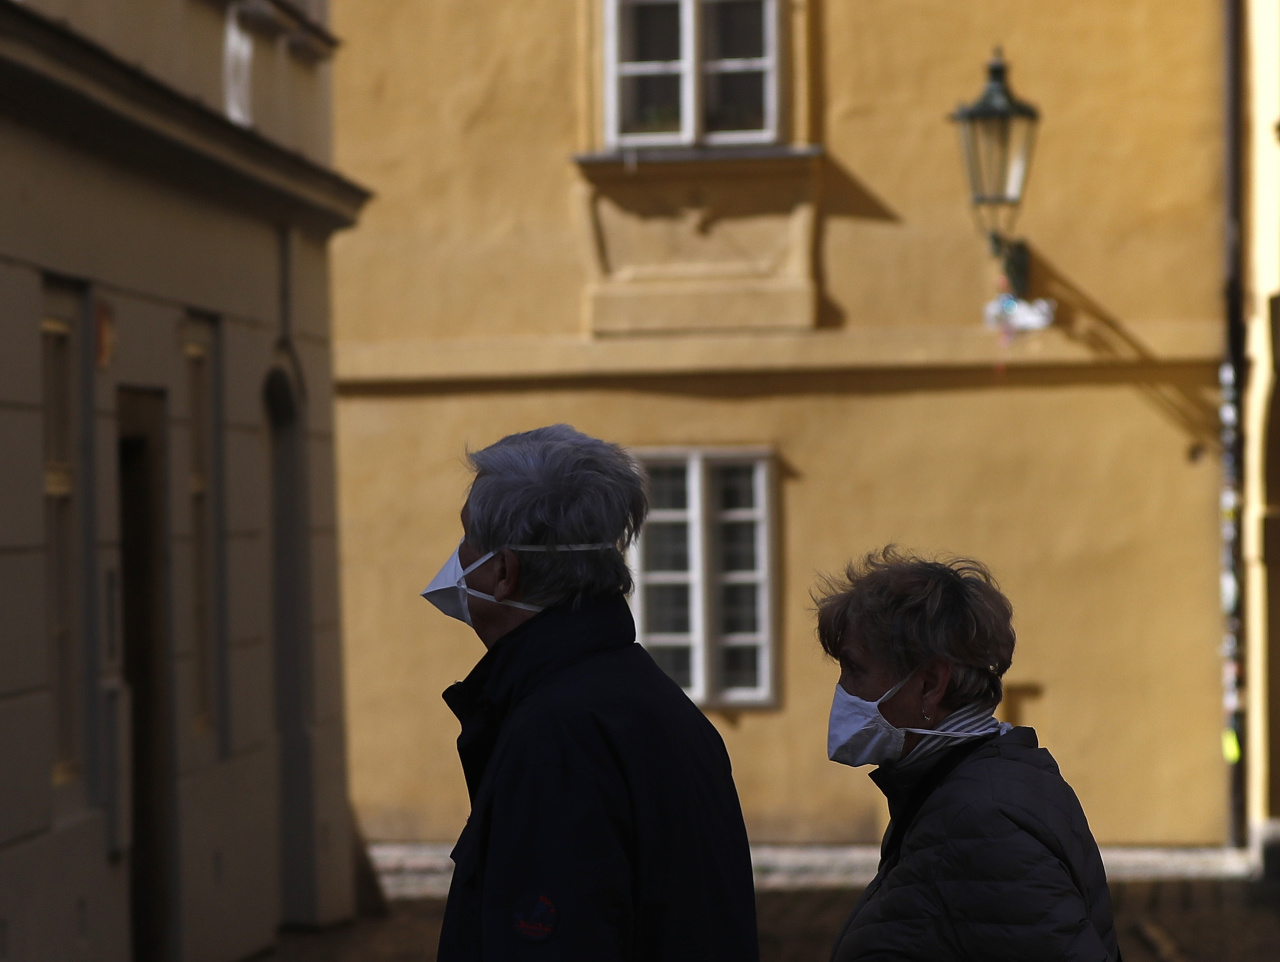 Približne od polovice júna prestane v Česku platiť zákaz vychádzania bez ochranného rúška zakrývajúceho nos a ústa.